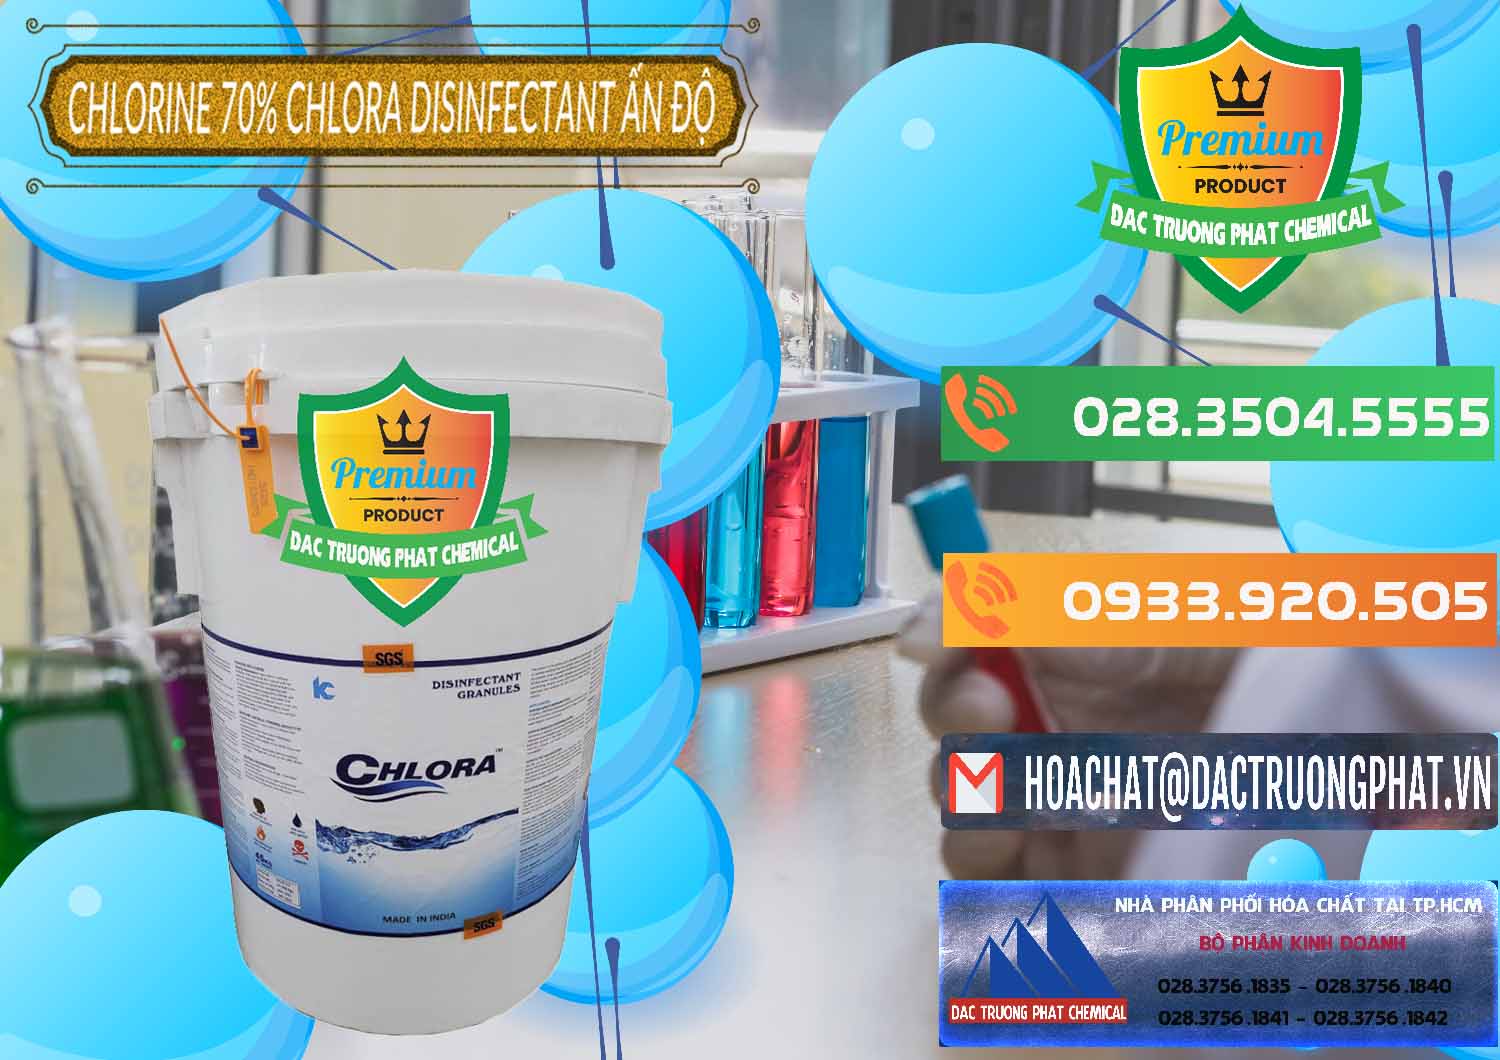 Cty chuyên nhập khẩu _ bán Chlorine – Clorin 70% Chlora Disinfectant Ấn Độ India - 0213 - Công ty chuyên kinh doanh và phân phối hóa chất tại TP.HCM - hoachatxulynuoc.com.vn